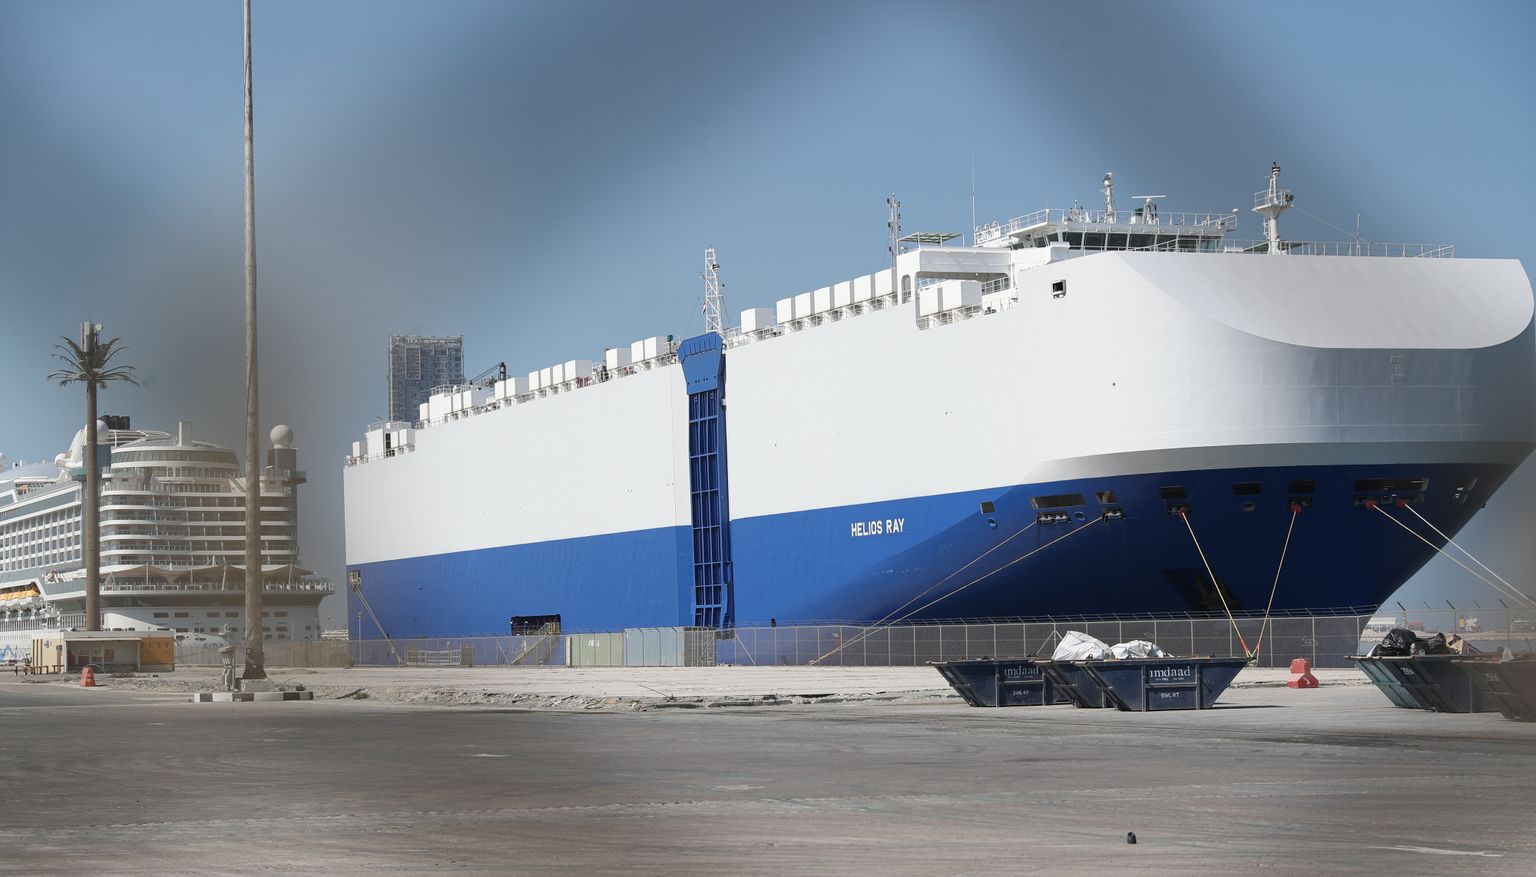 Omaani lahel plahvatuses kahjustada saanud Iisraeli kaubalaev Helios Ray.